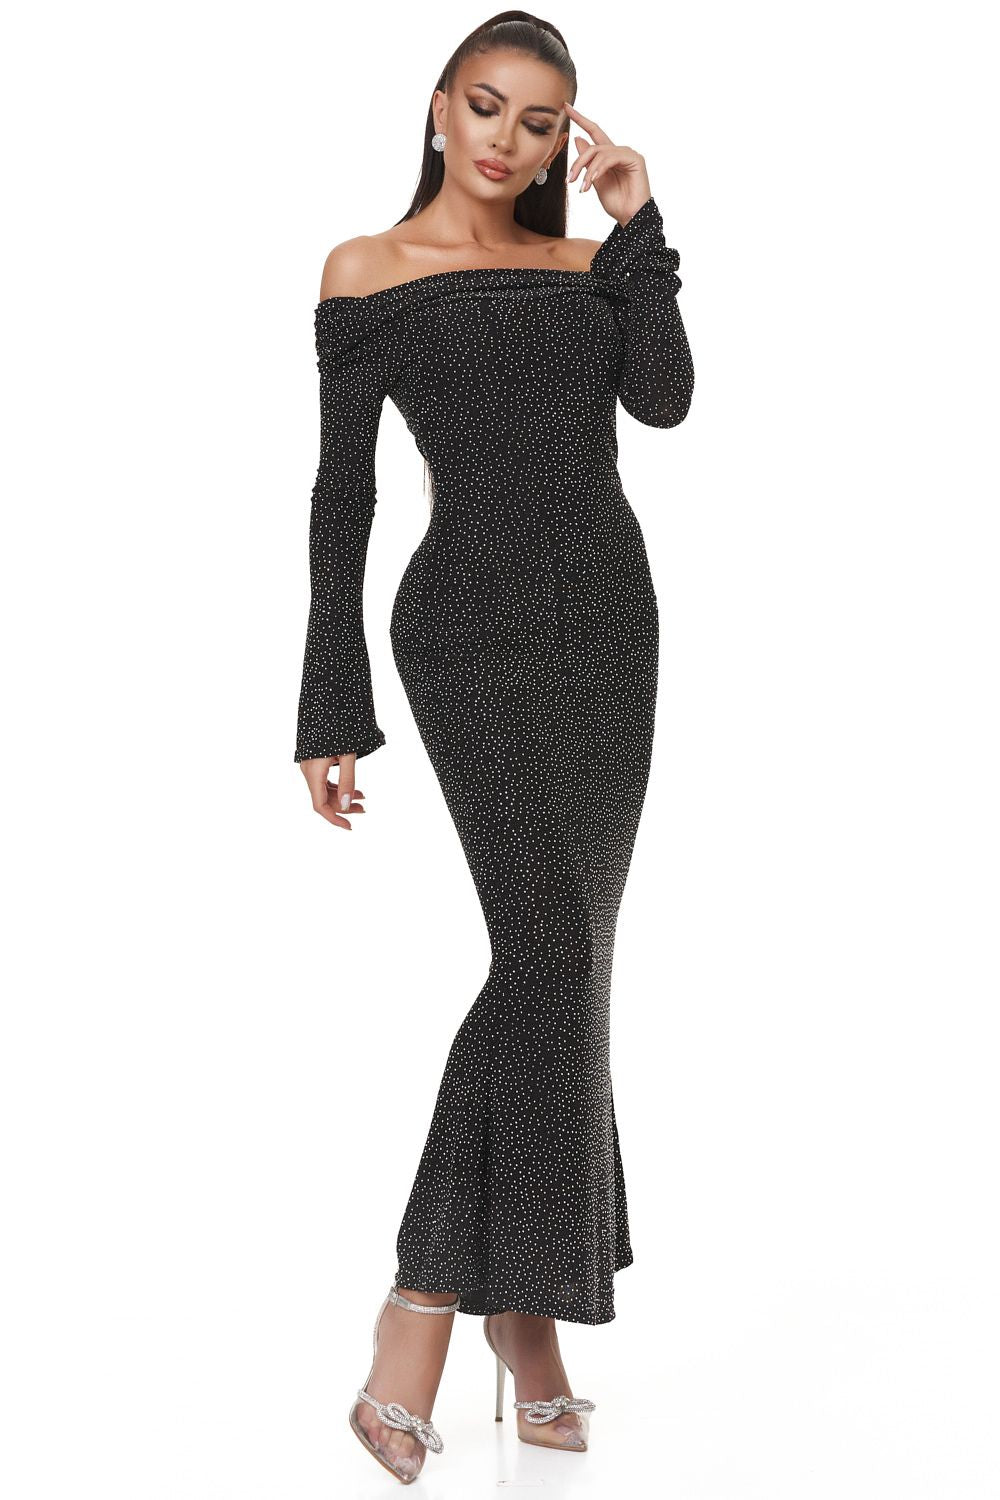 Serevi Bogas long black dress for women